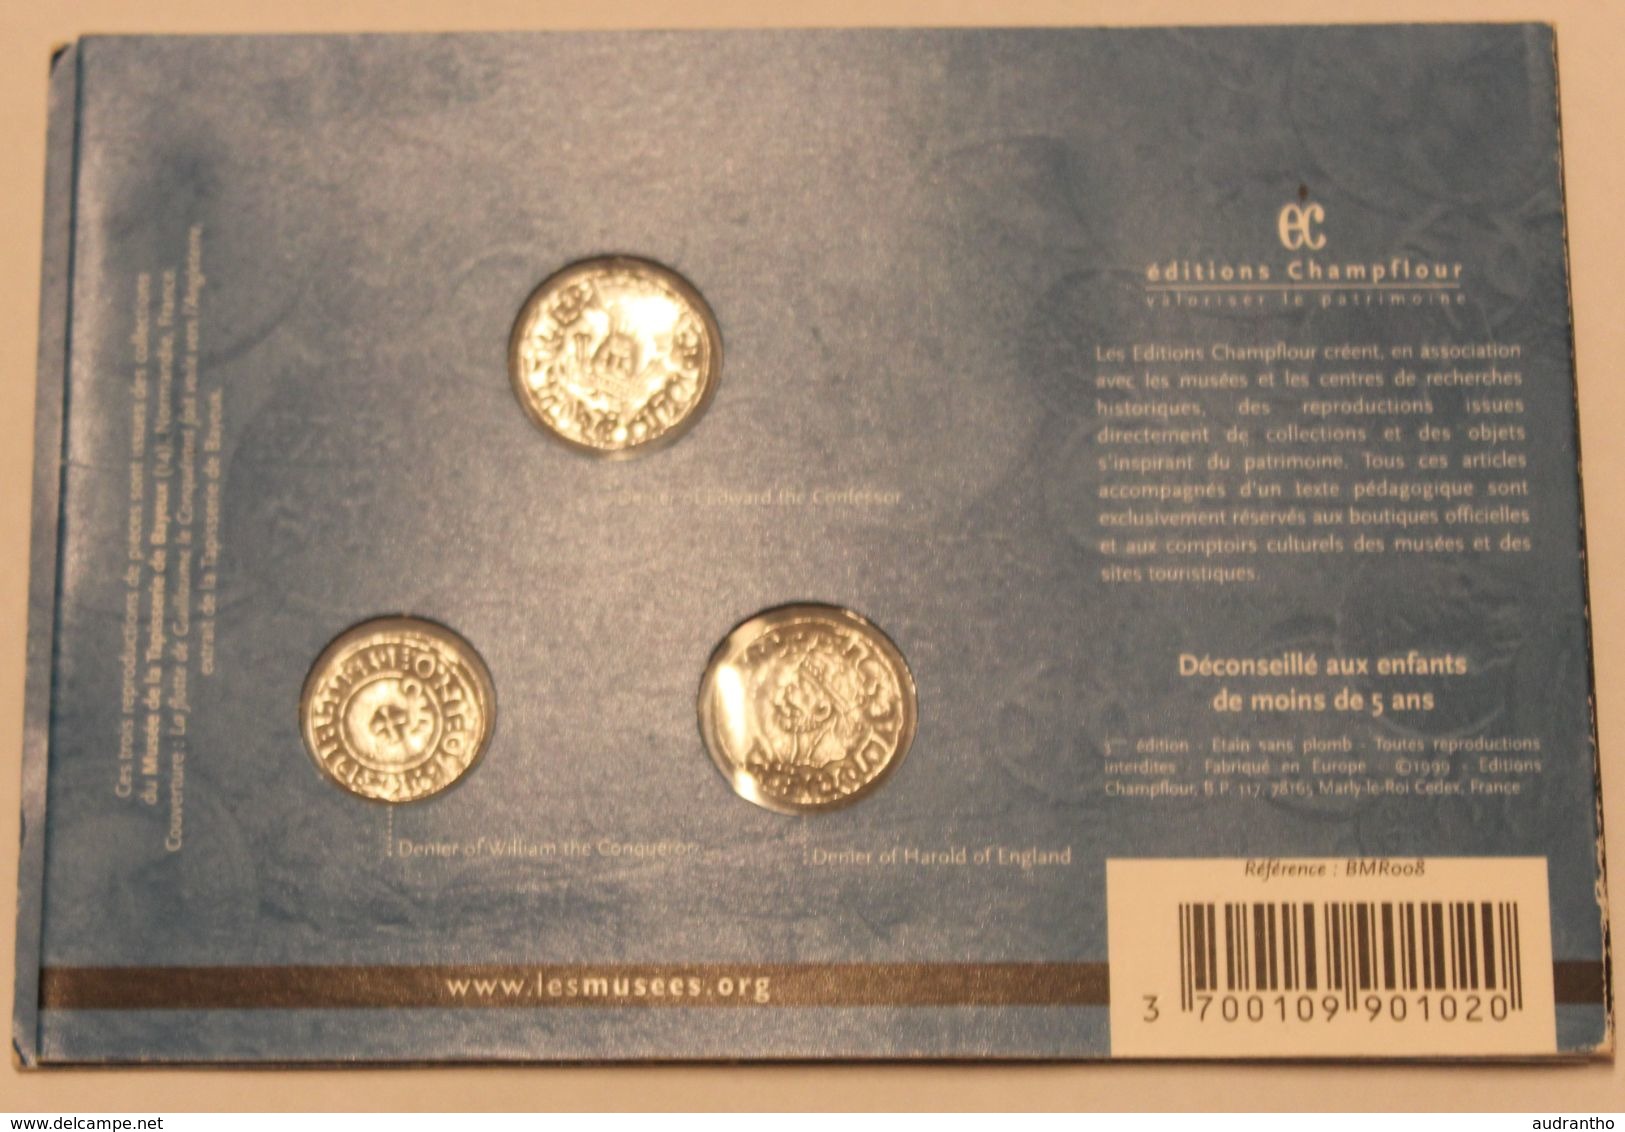 Plaque Reproduction De 3 Monnaies Médiévales Collection Art Et Patrimoine Moyen-âge N°2 éditions Champflour 1999 - Counterfeits